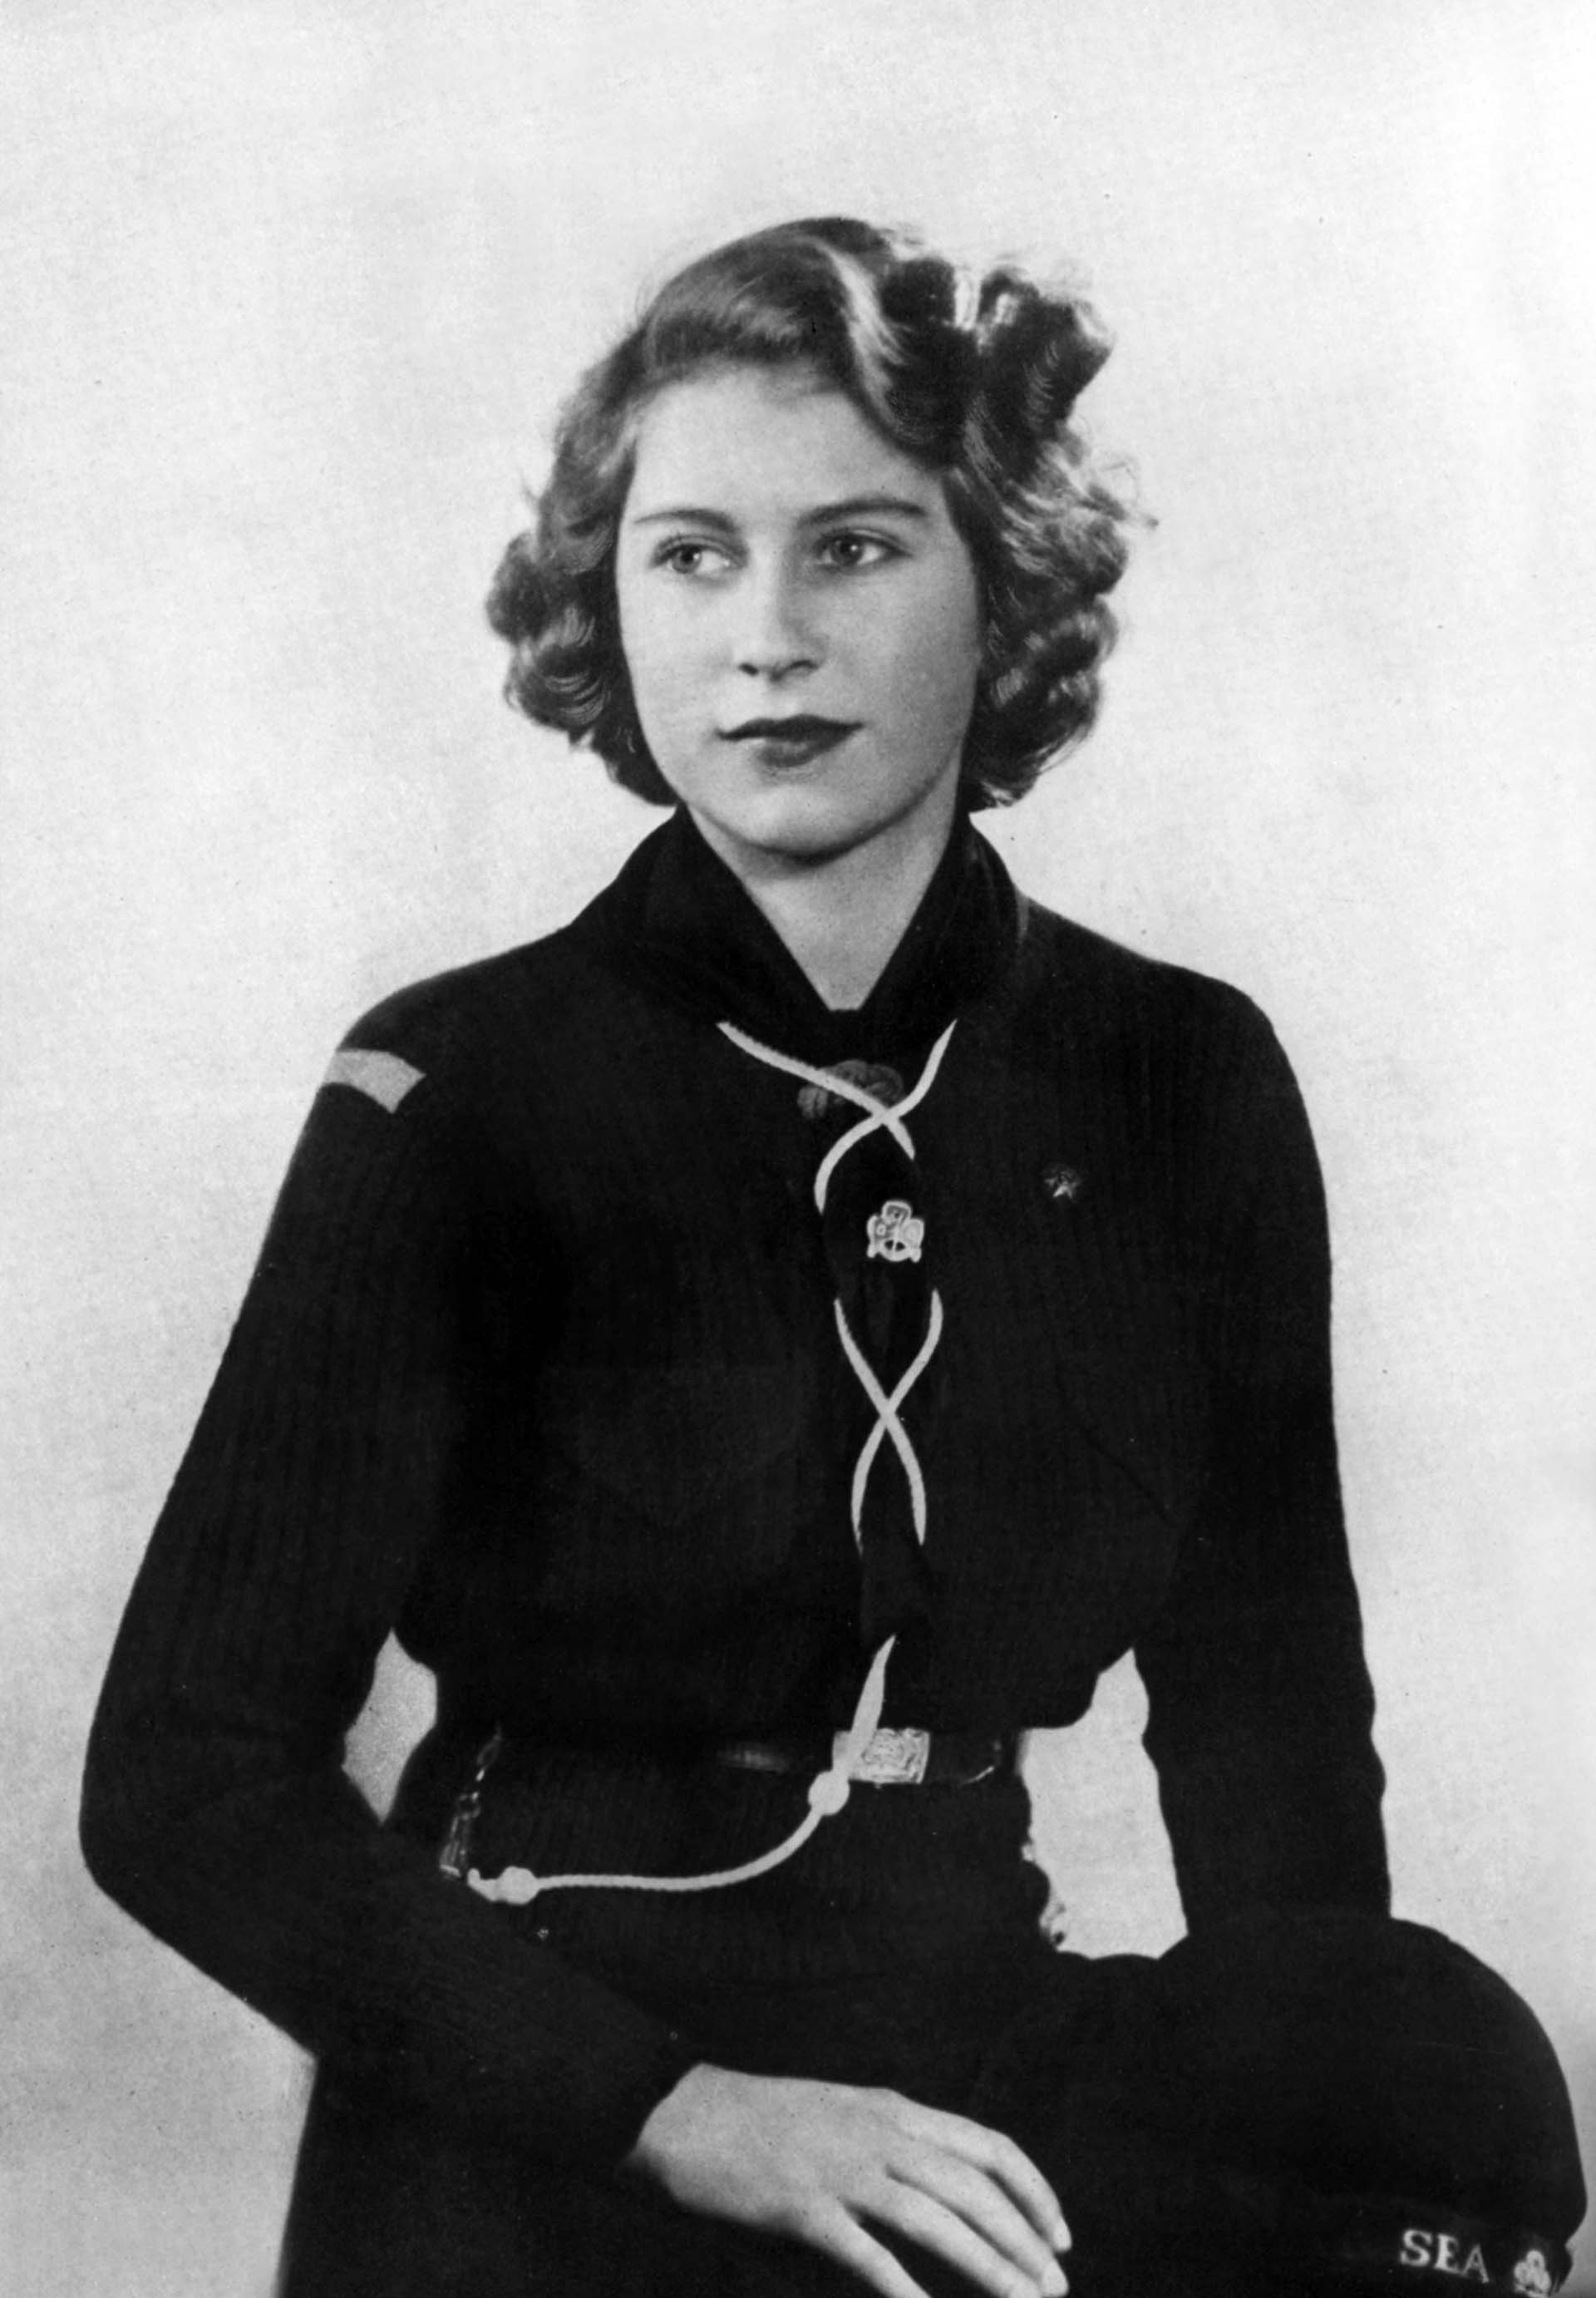 Durante la Segunda Guerra Mundial, ingresó al Servicio Territorial Auxiliar, donde se desempeñaba el área femenina del Ejército británico y se destacó por su servicio como teniente segunda